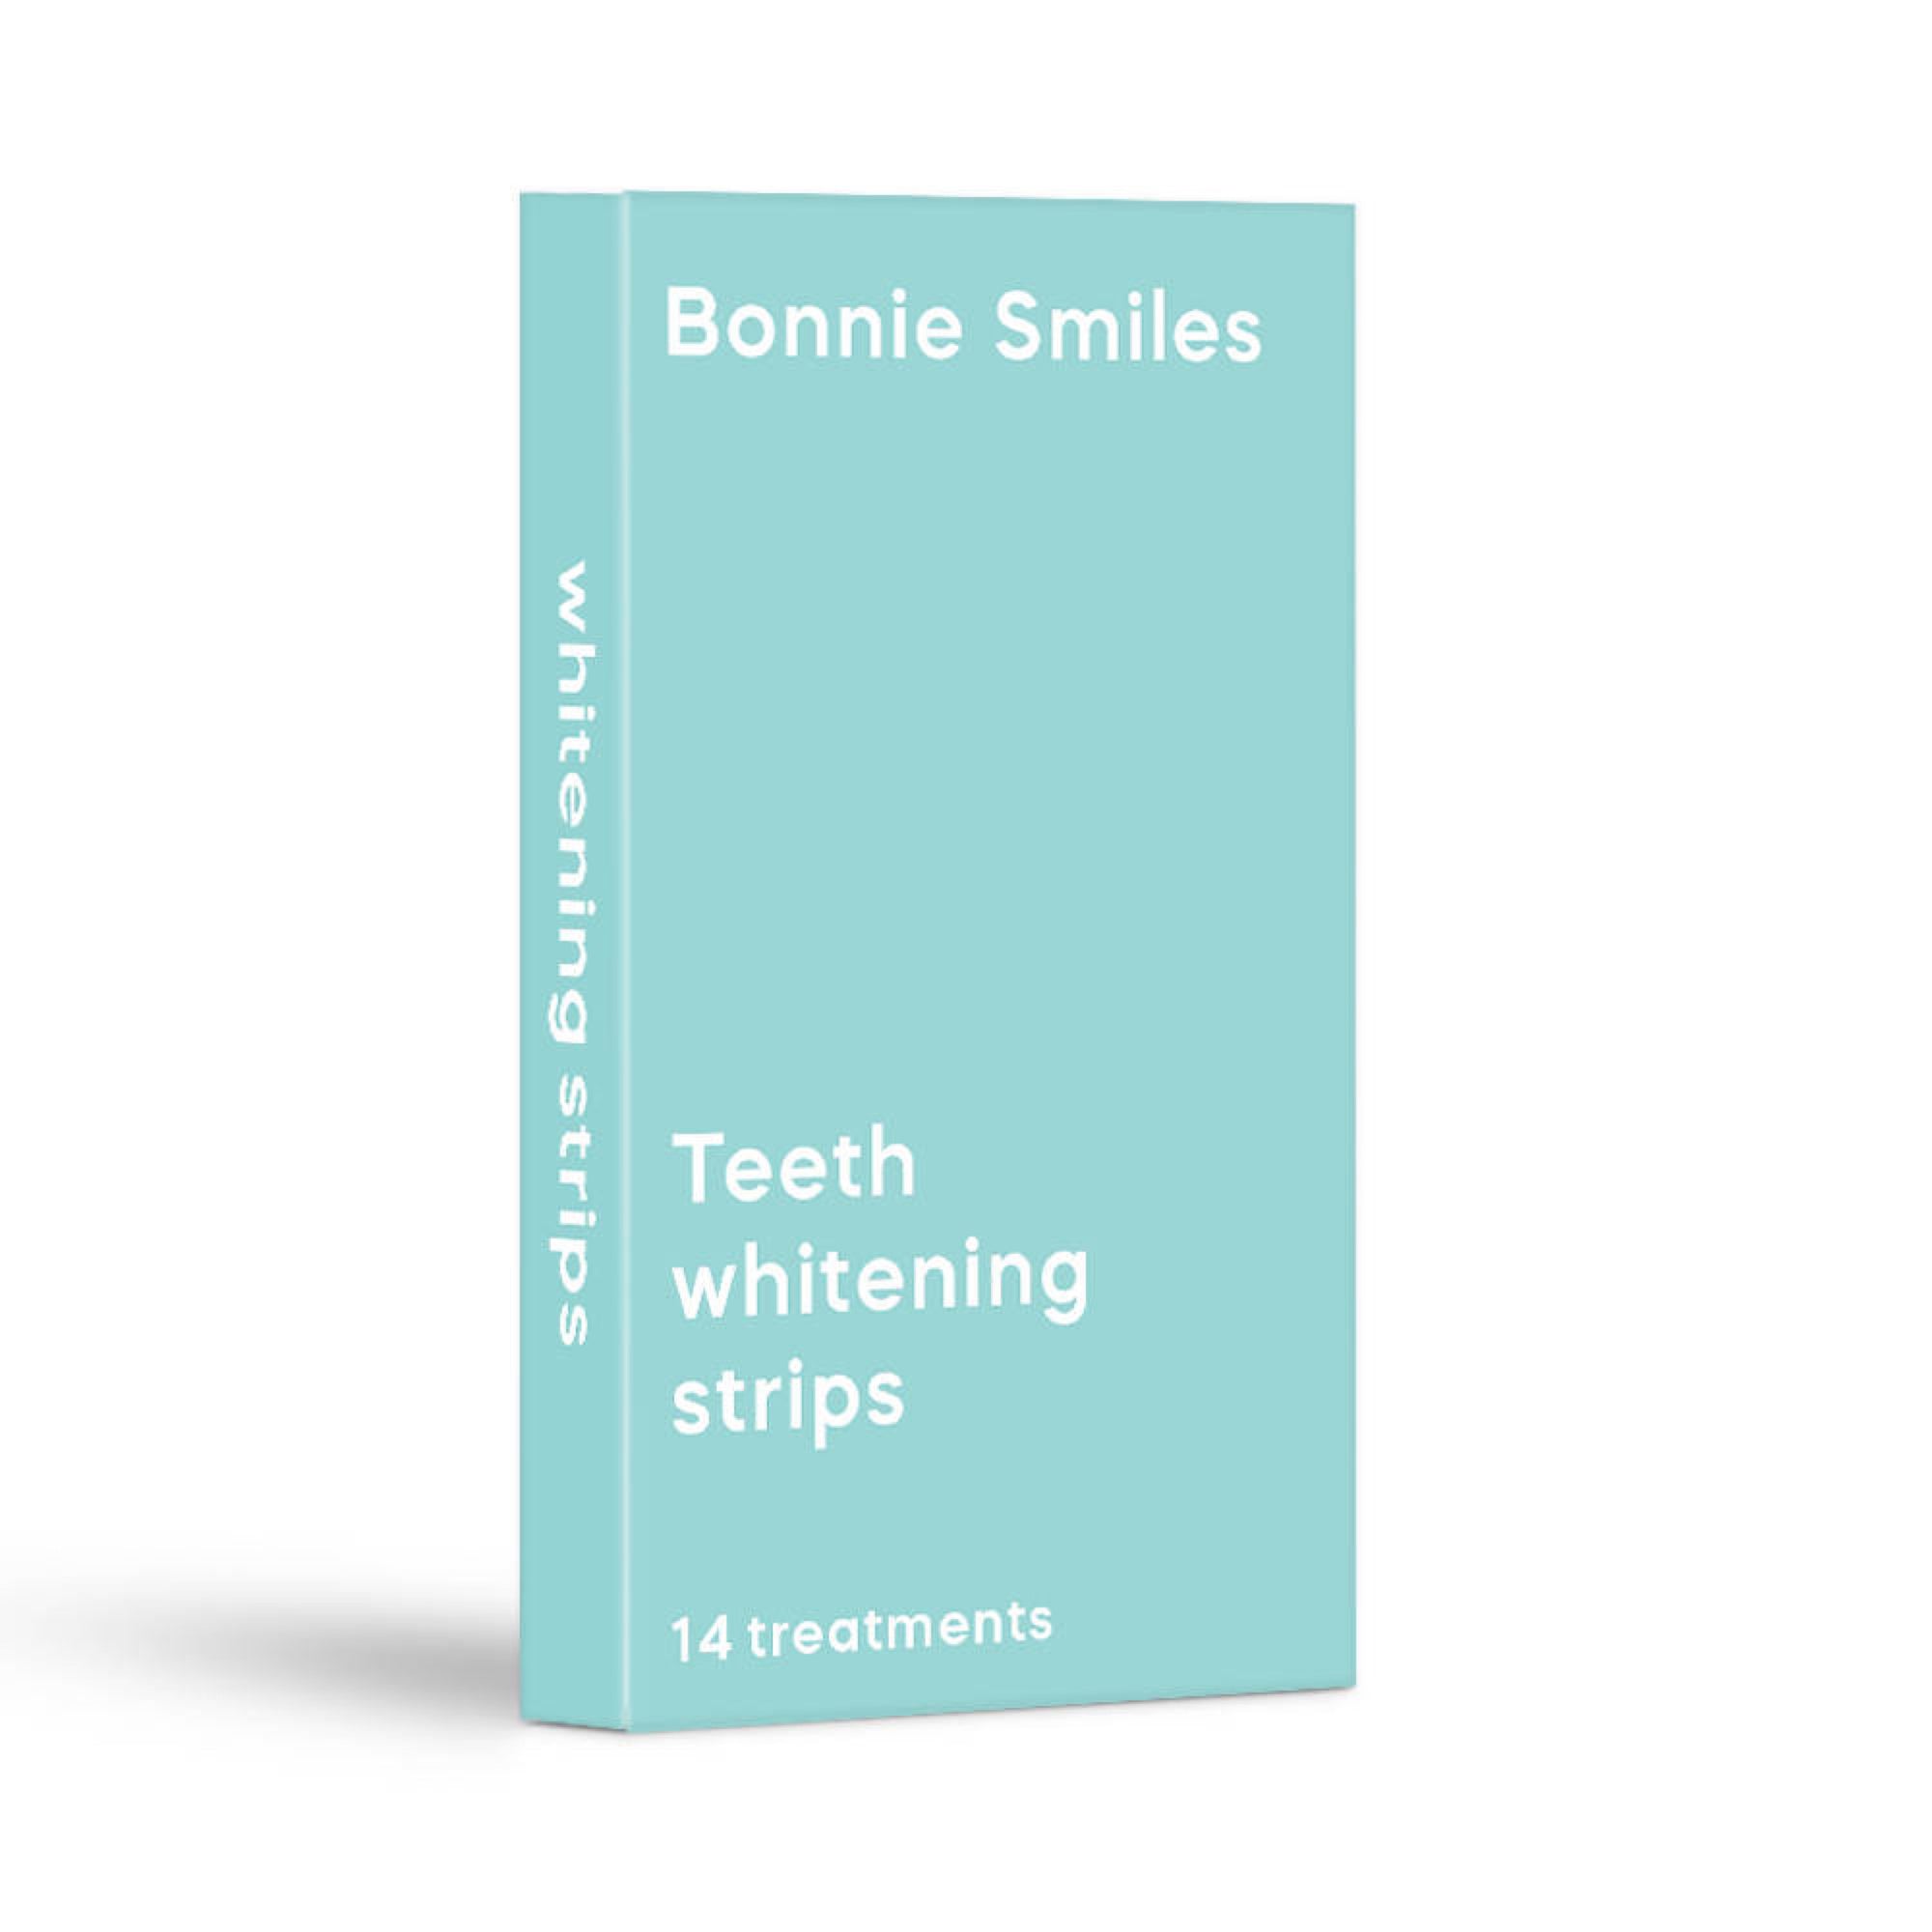 2x Box Bundle Whitening Strips (56 strips)